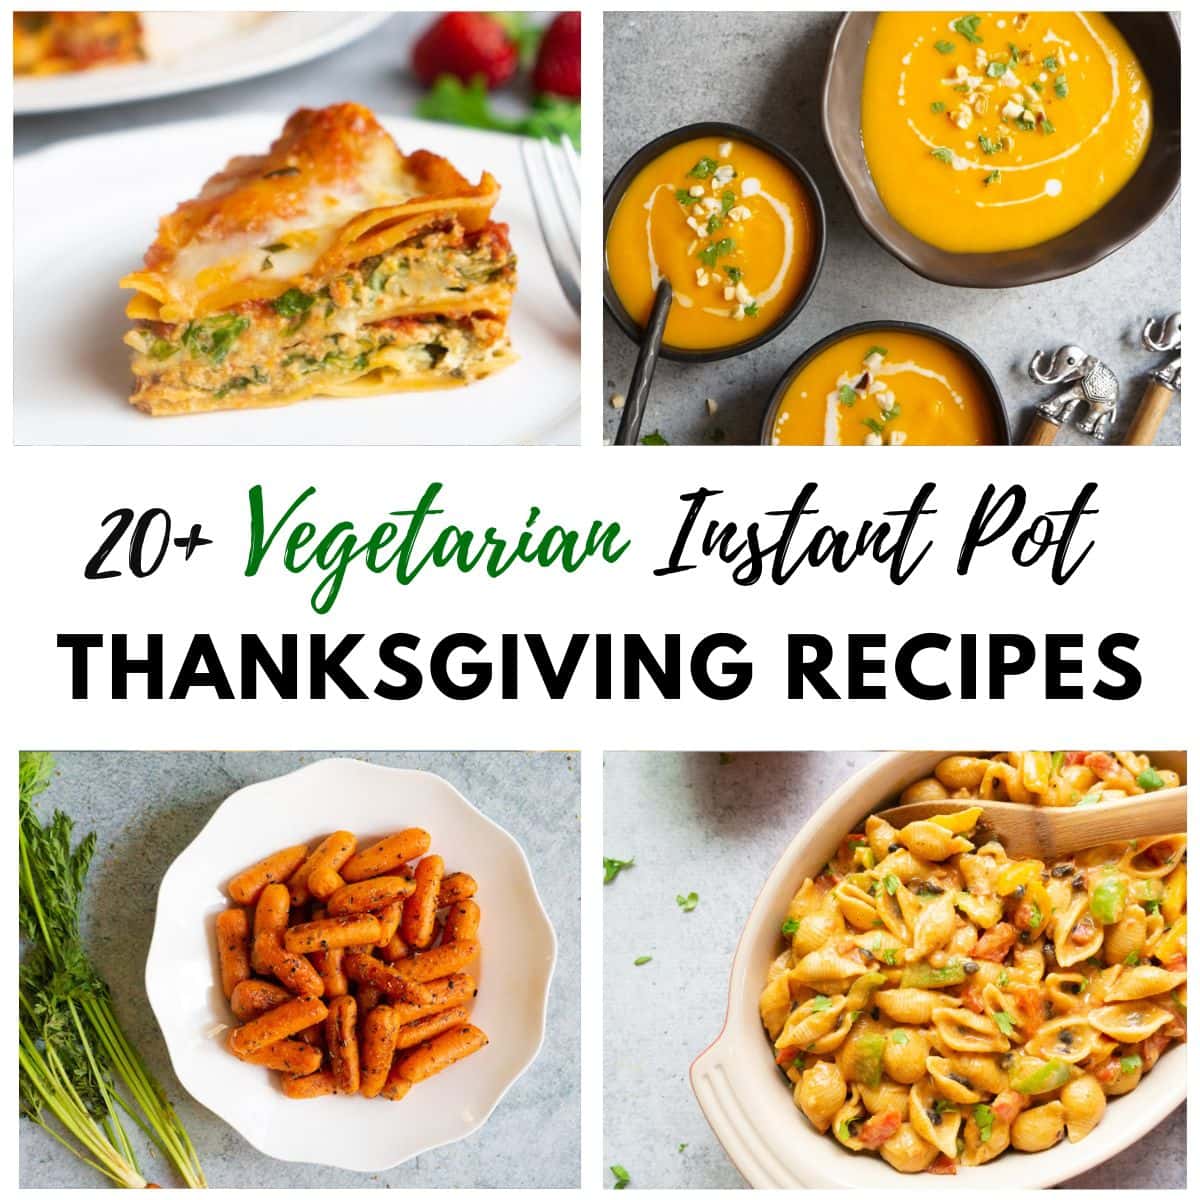 20+ Vegetarian Instant Pot Thanksgiving Recipes